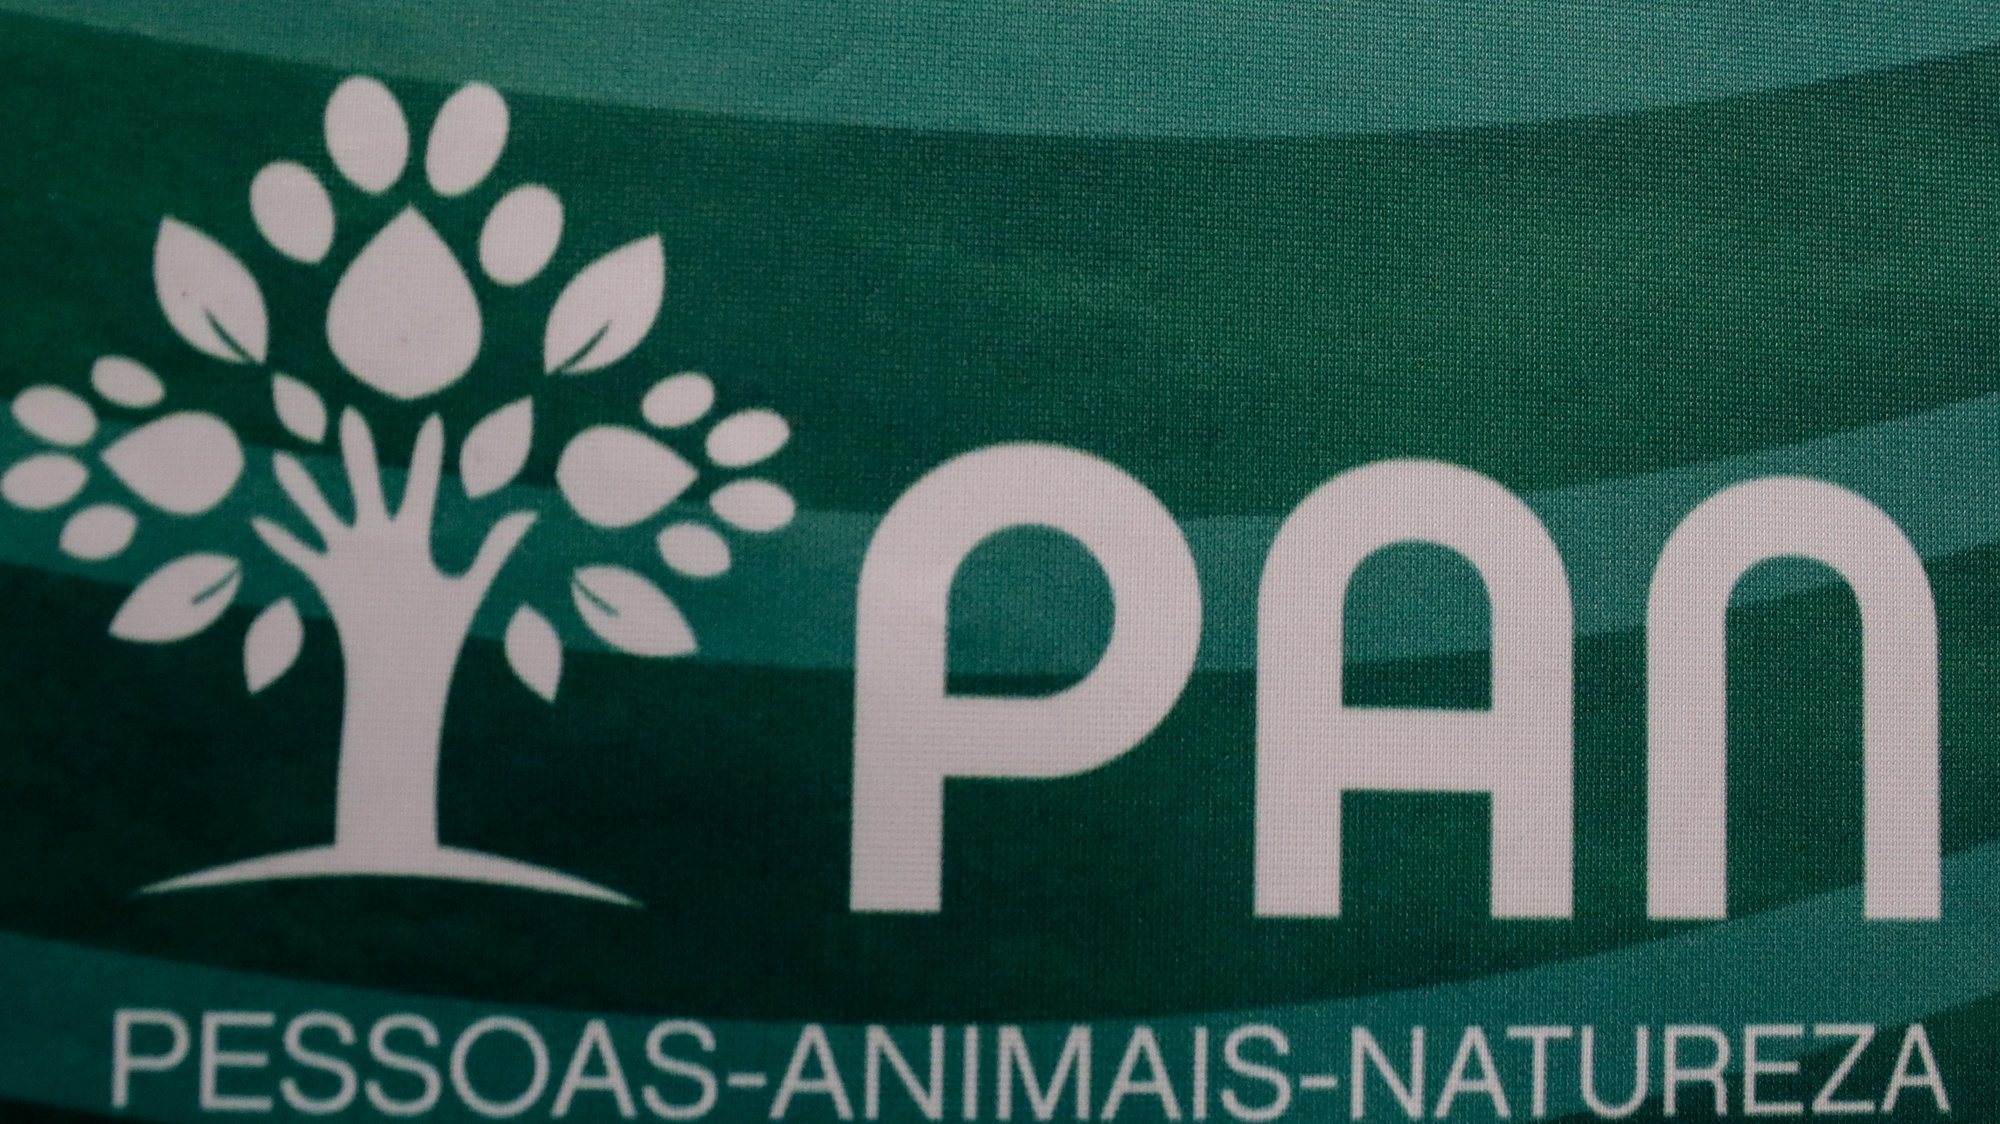 Logotipo do partido Pessoas Animais Natureza (PAN), 08 de novembro de 2021. TIAGO PETINGA/LUSA